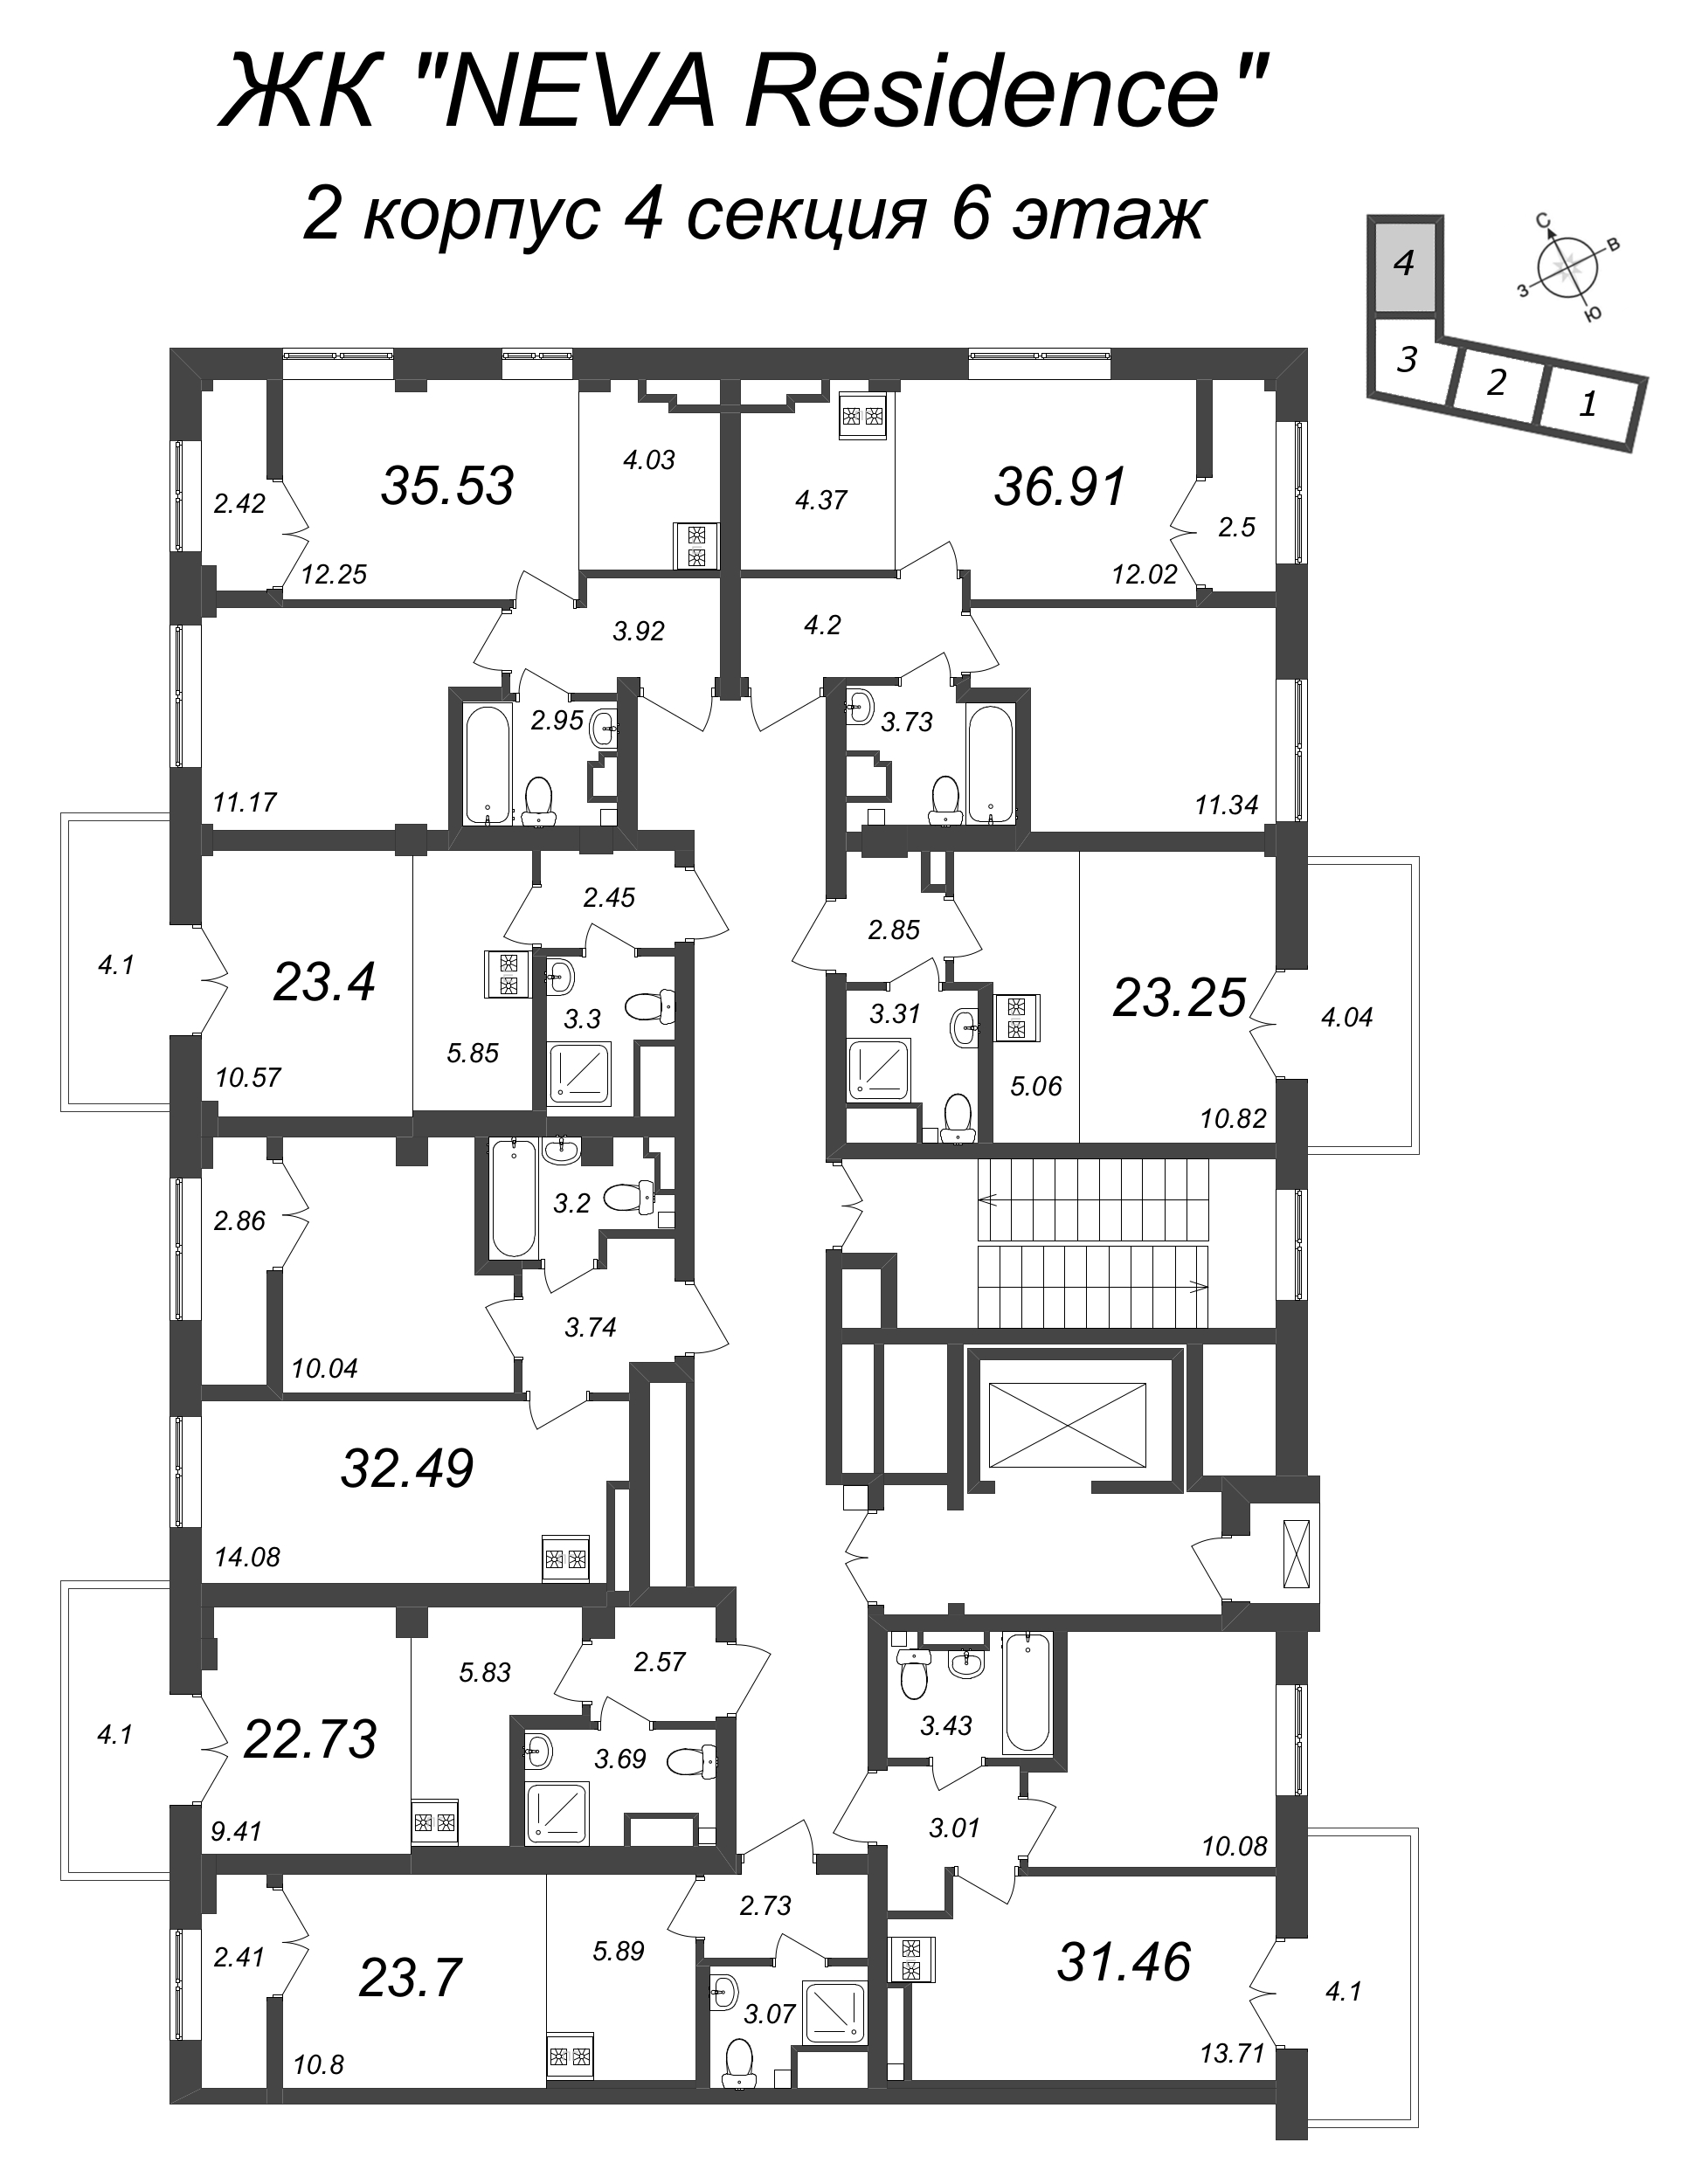 2-комнатная (Евро) квартира, 36.91 м² в ЖК "Neva Residence" - планировка этажа